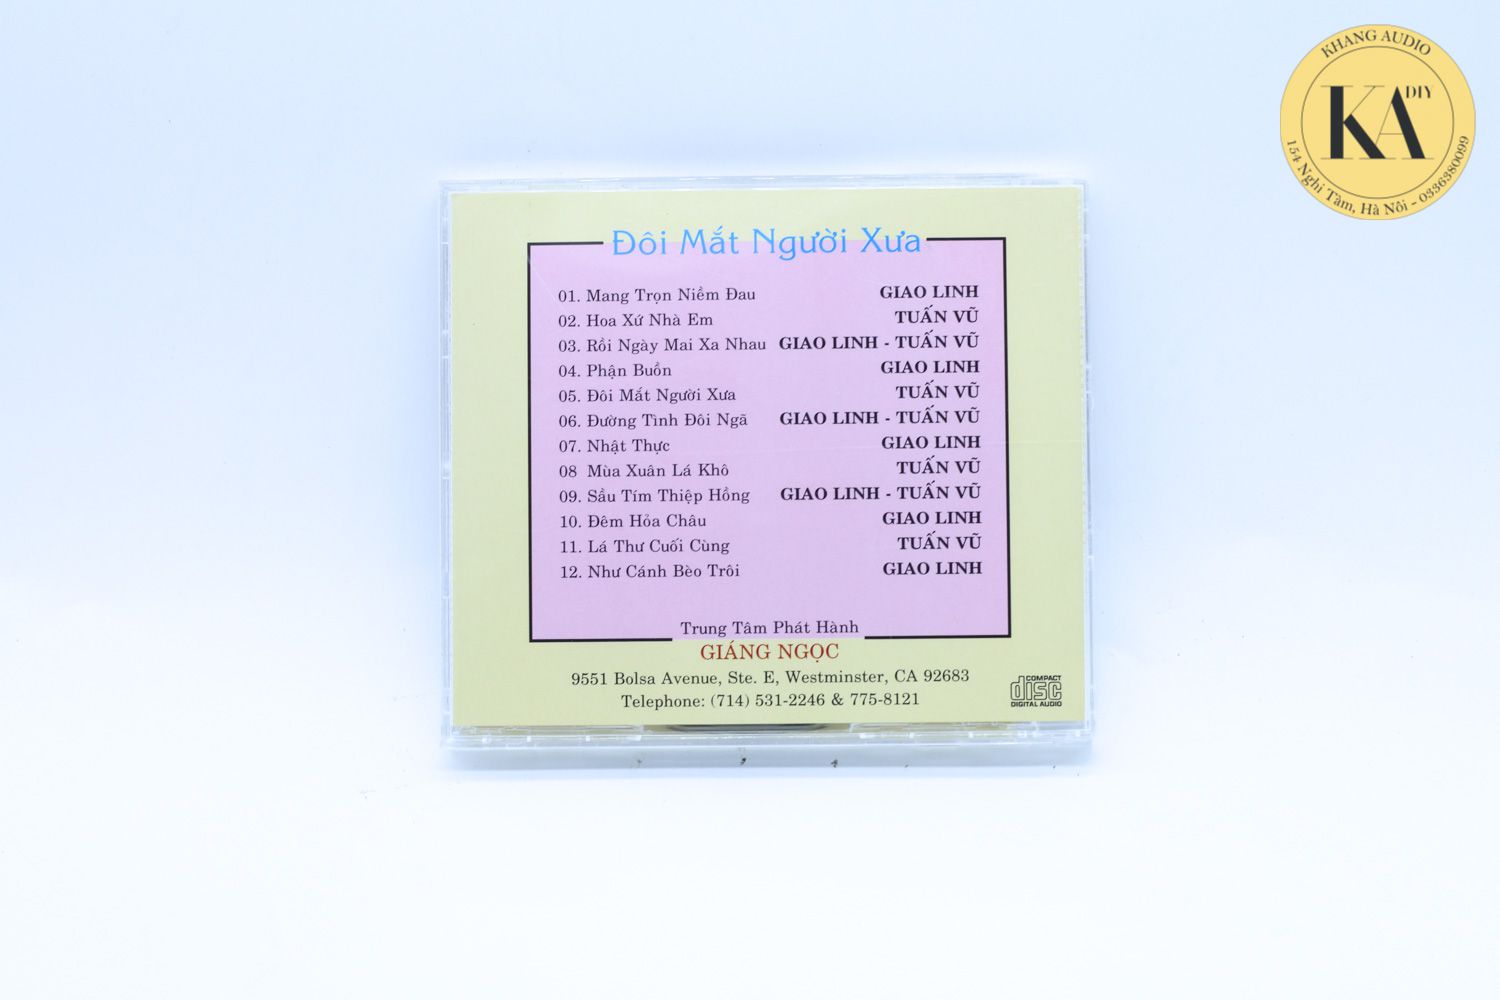 Combo 10 CD Nhạc Vàng Tuyển Chọn Hay Nhất Test Dàn Khang Audio 0336380099